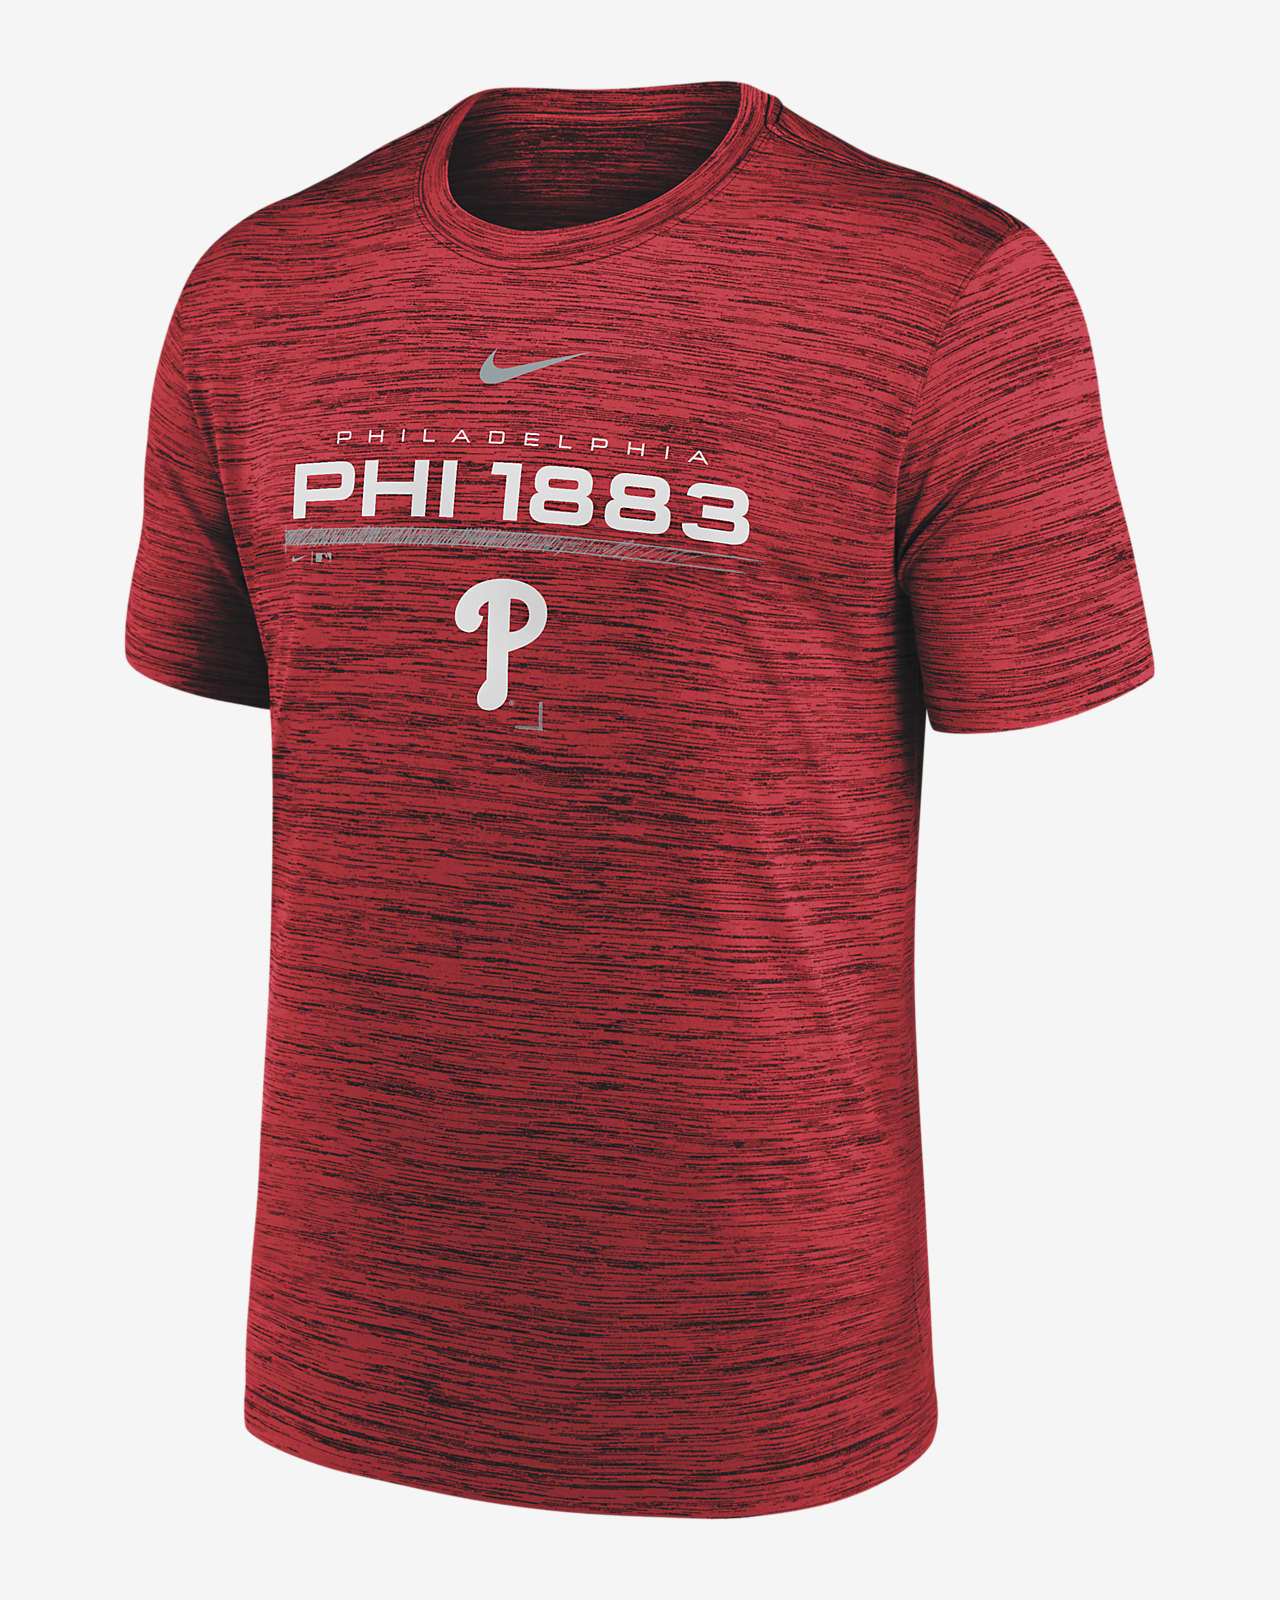 Nike Velocity Team (MLB Philadelphia Phillies) Men's T-Shirt.